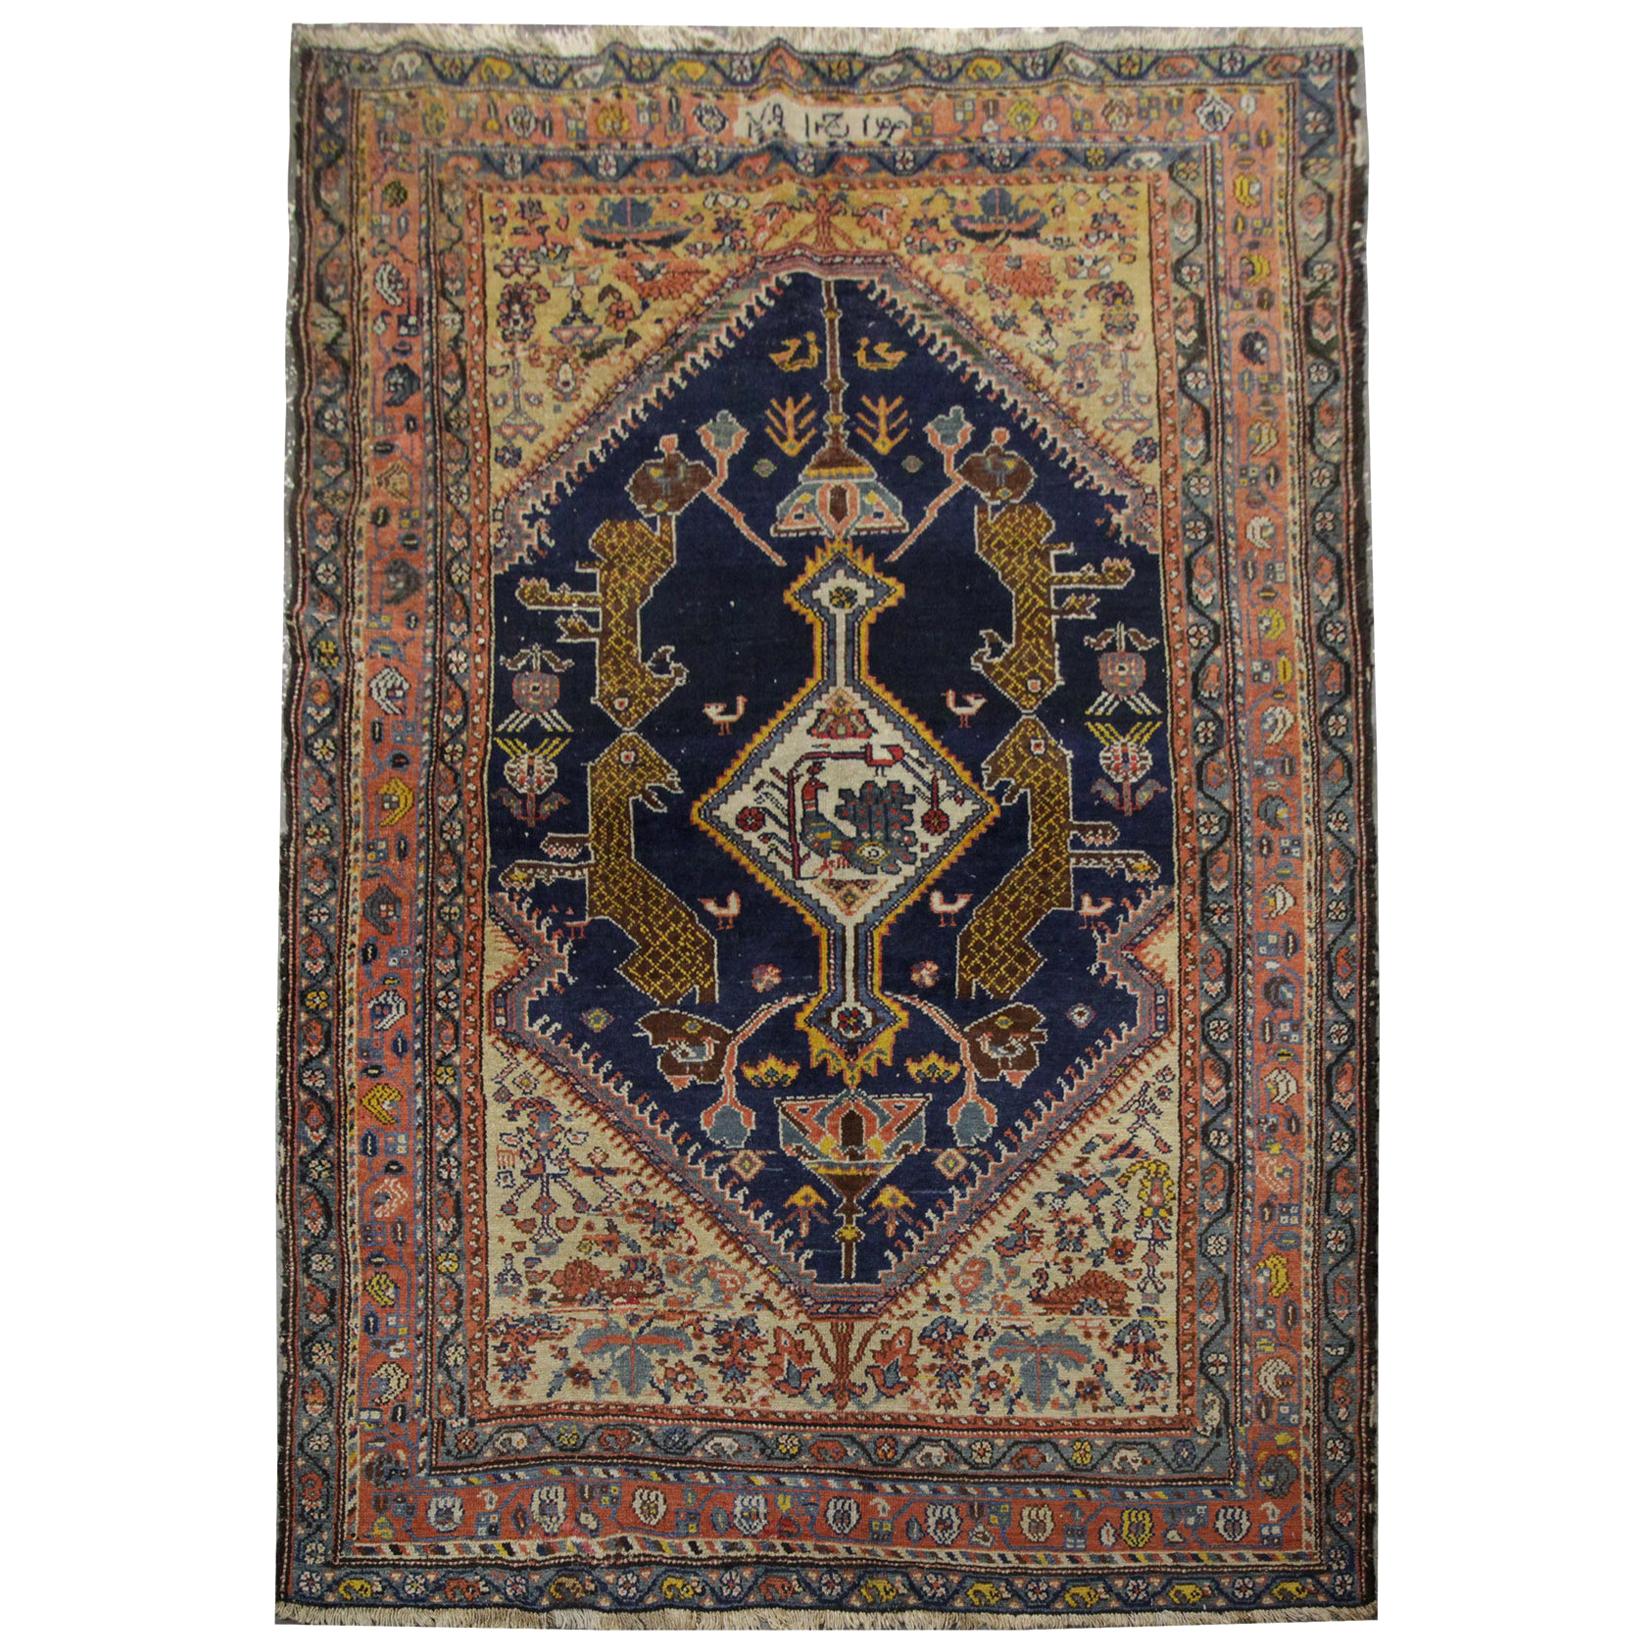 Antiker armenischer Teppich:: blauer und oranger kaukasischer Teppich Wohnzimmerteppich